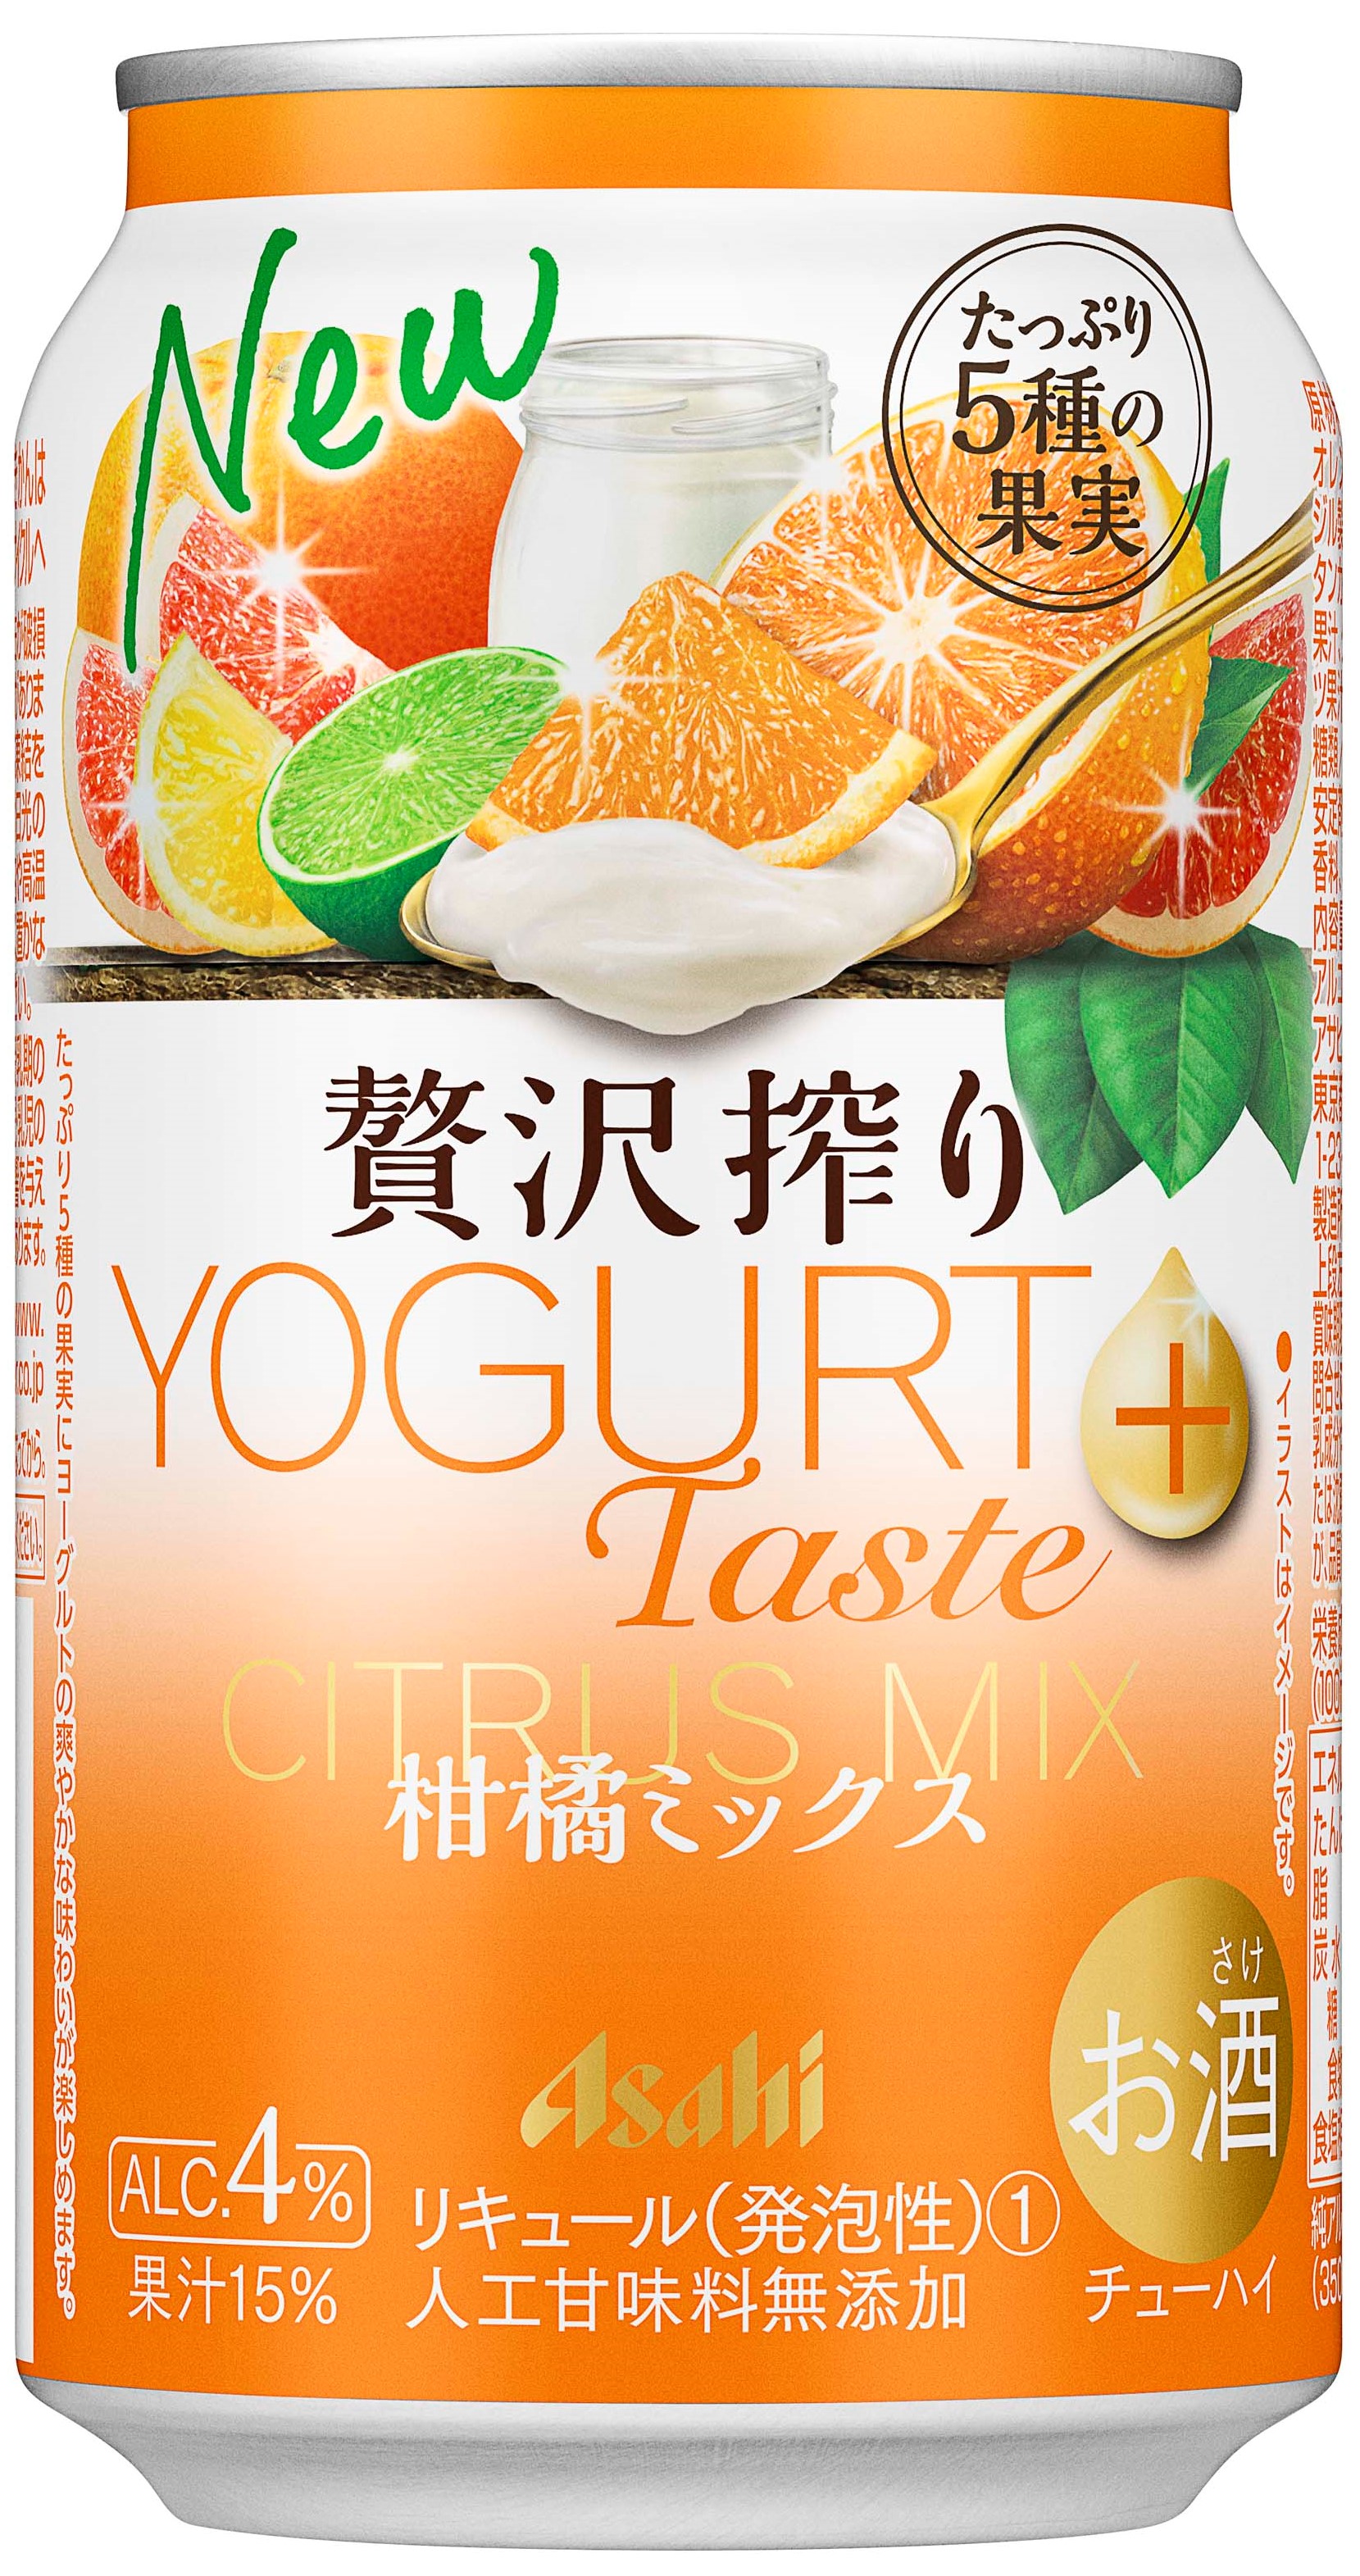 鮮醇果榨YOGURT Taste+ 綜合柑橘